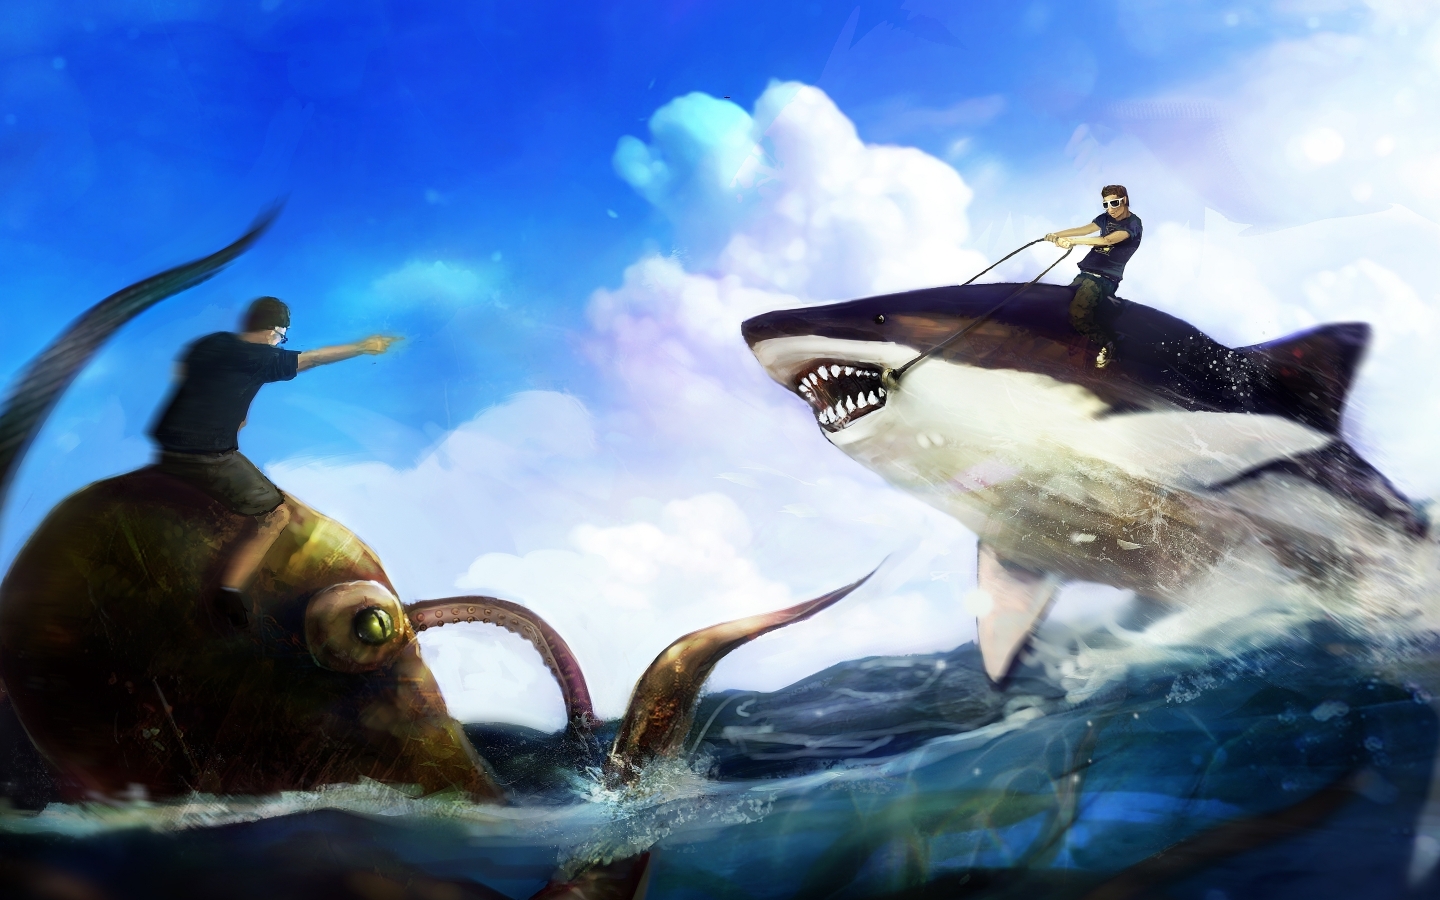 Shark Fight for 1440 x 900 widescreen resolution